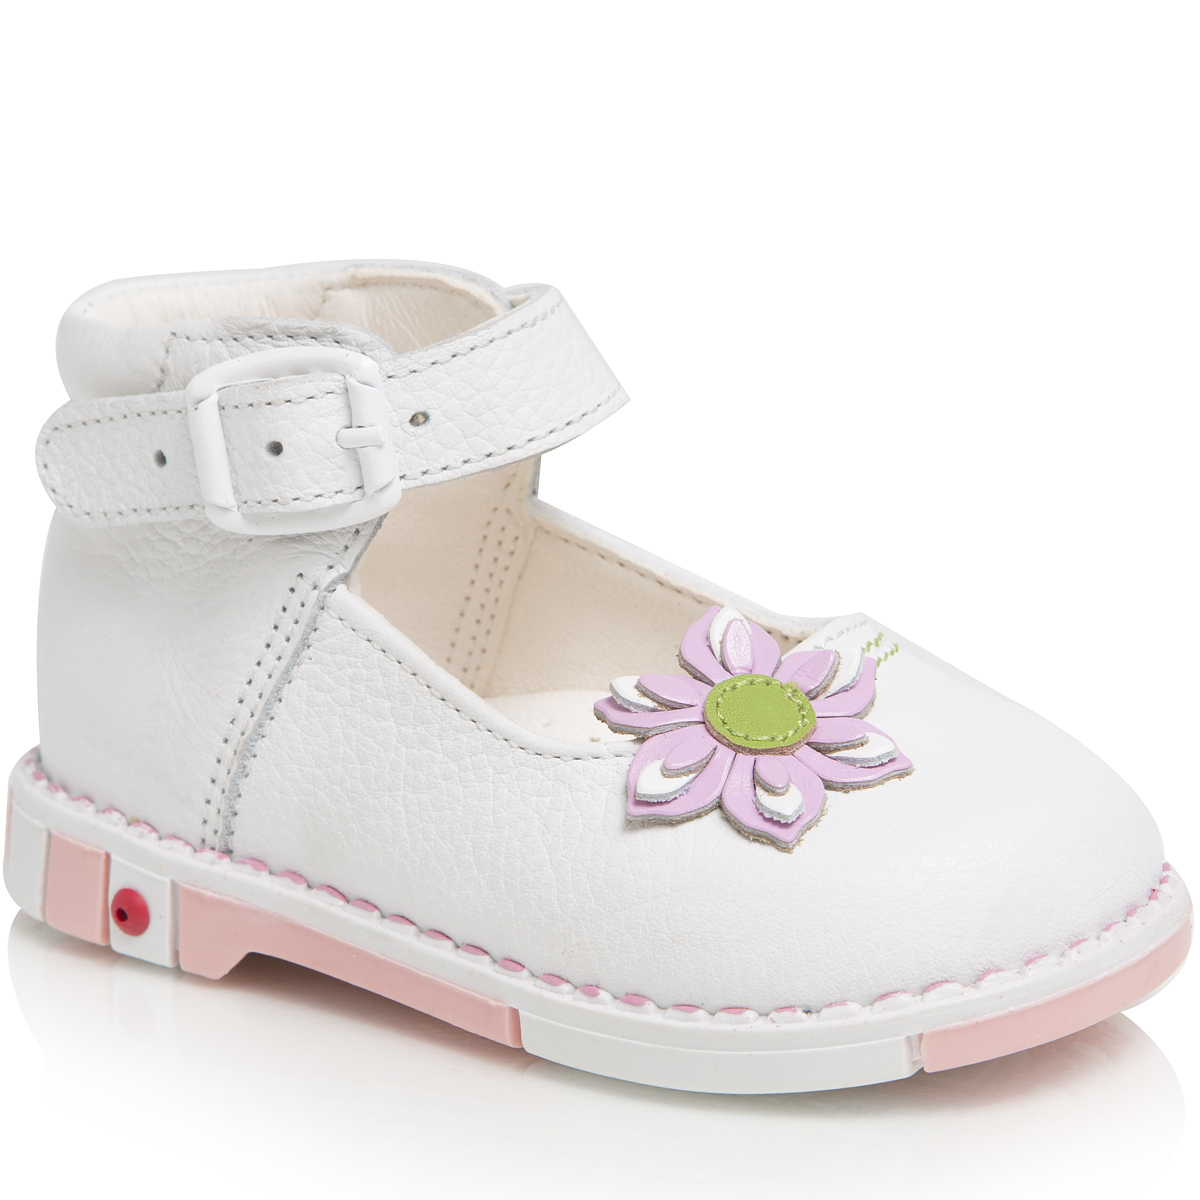 Туфли для девочки Таши Орто, цвет: белый. 211-21. Размер 21